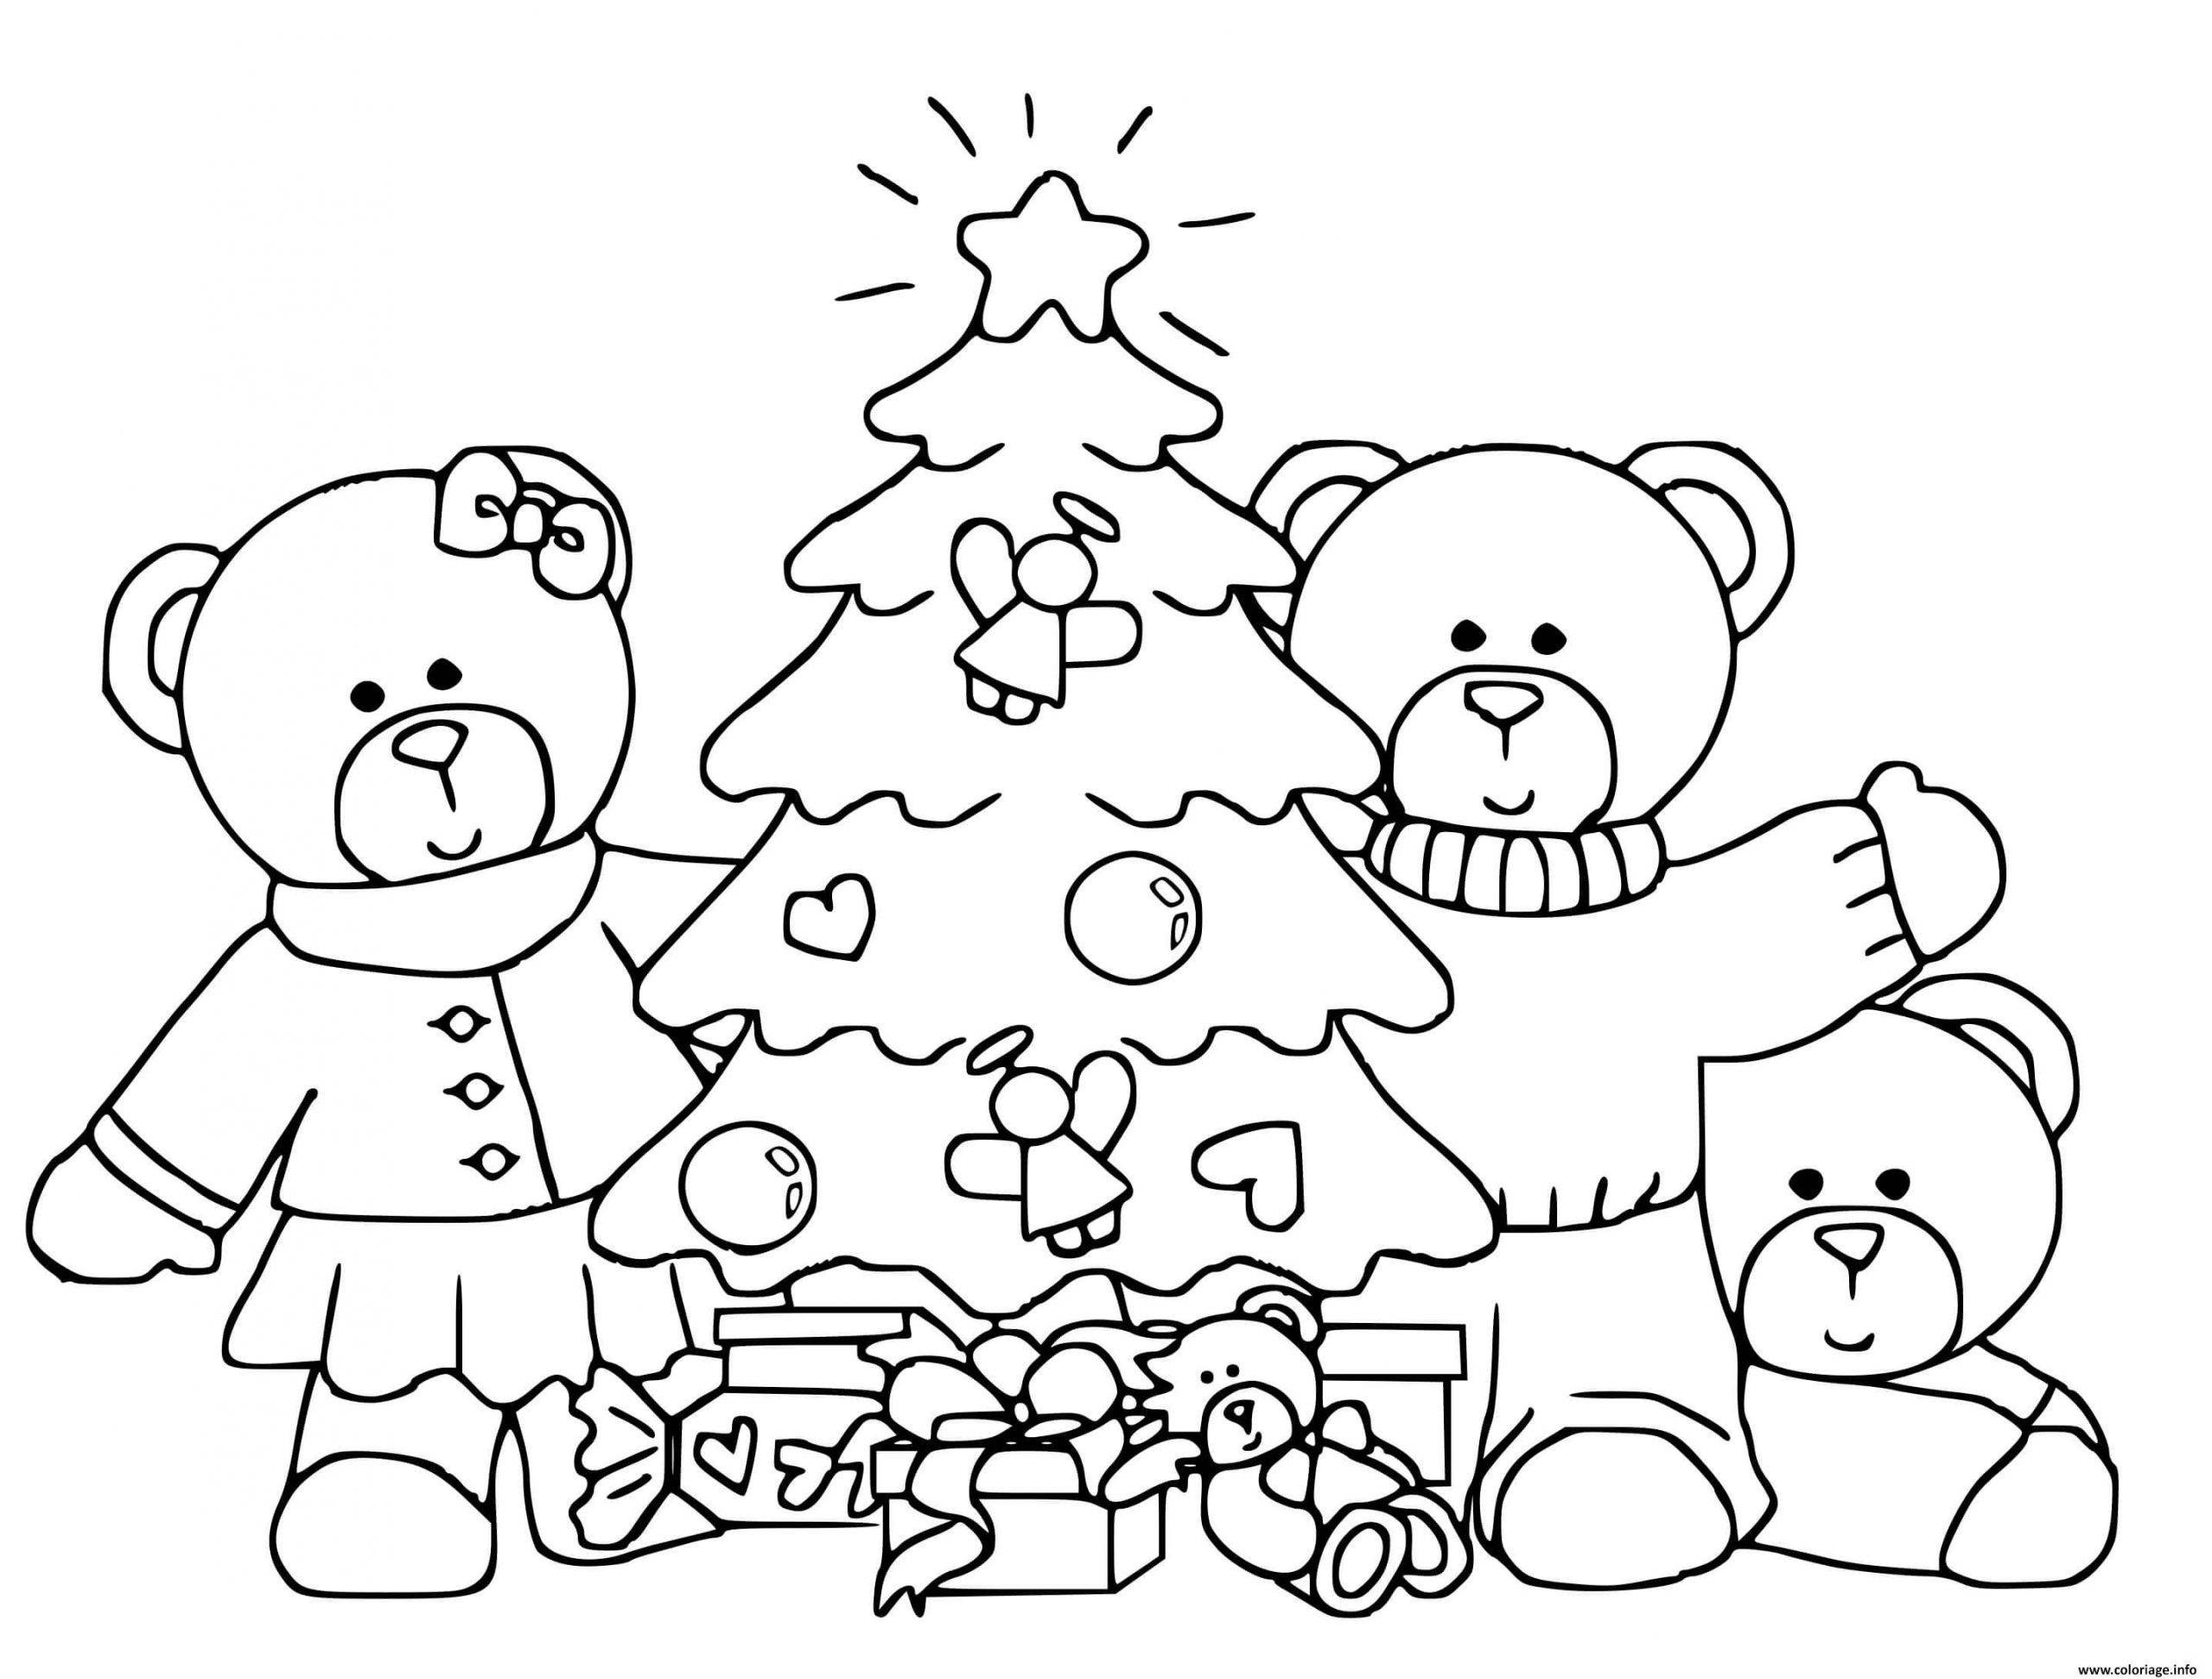 Coloriage Famille Ours Autour Dun Sapin De Noel Pour Enfants Maternelle tout Imprimer Des Dessin De Noel 